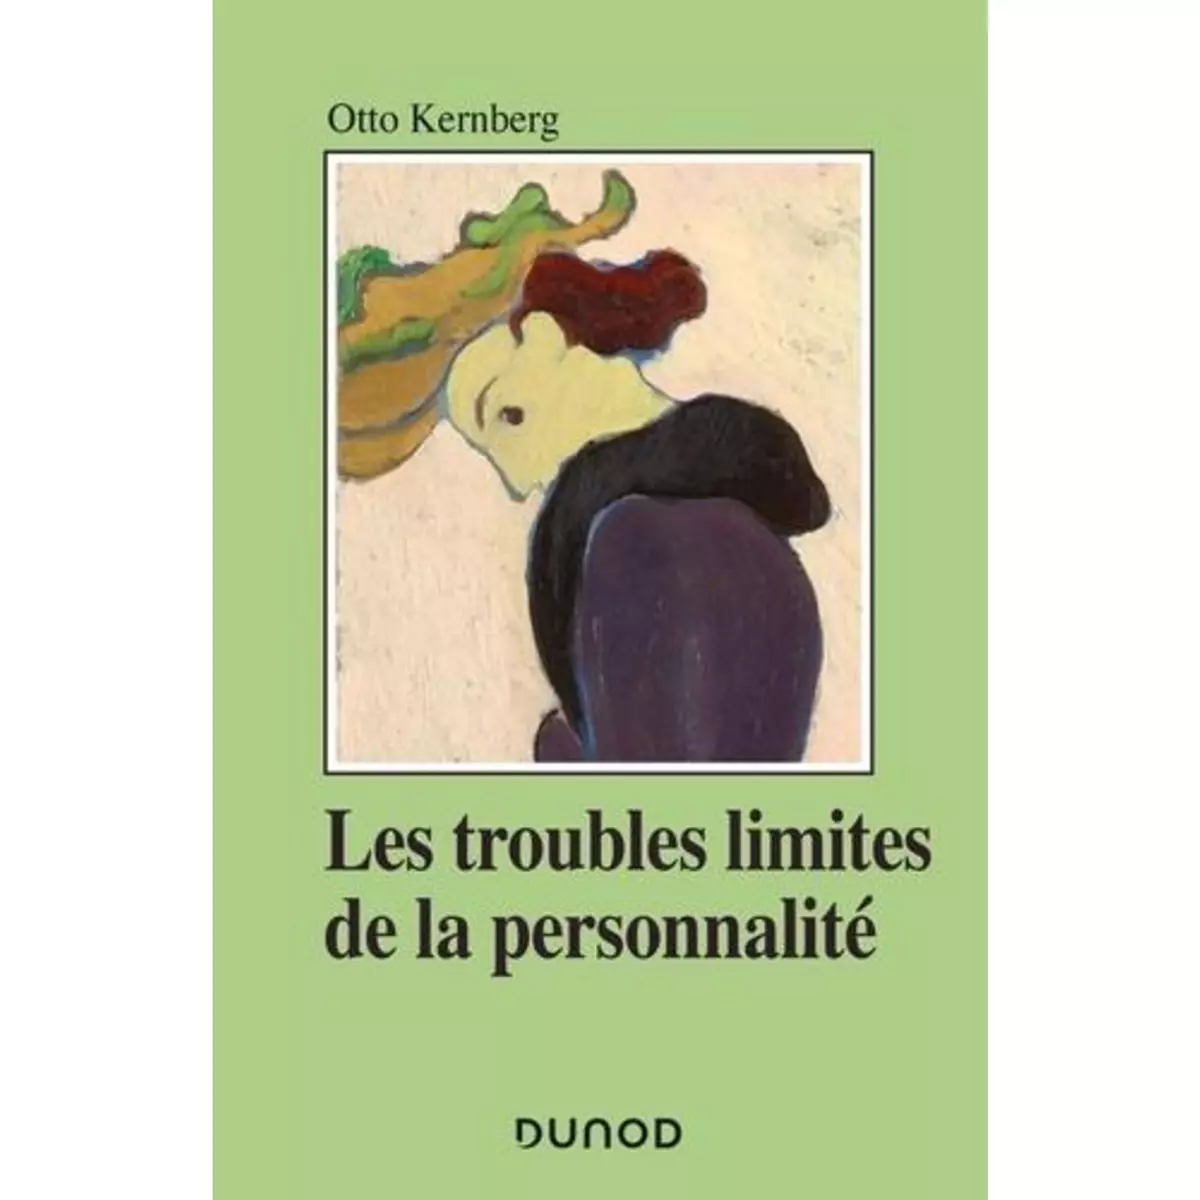  LES TROUBLES LIMITES DE LA PERSONNALITE, Kernberg Otto